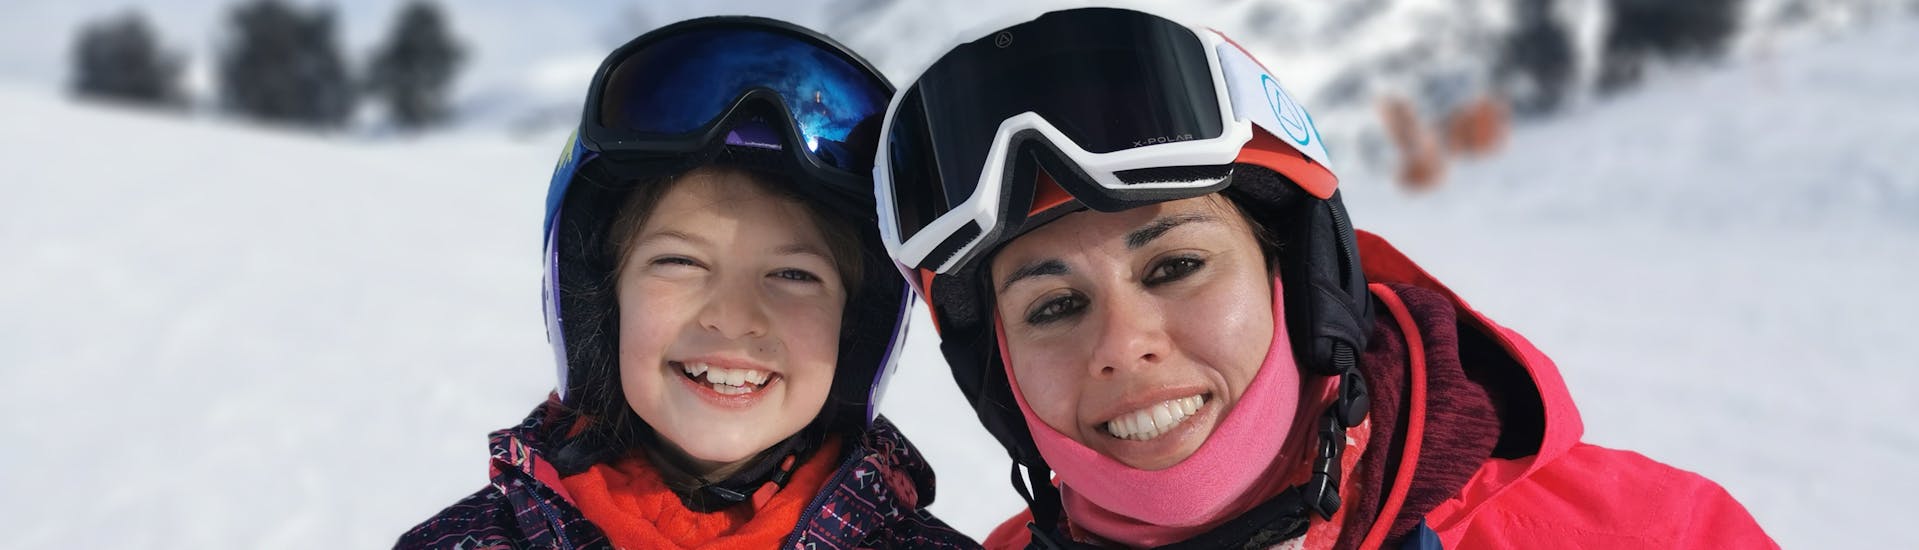 Cours de snowboard pour Enfants (4-16 ans) - Demi-journée avec Ski Life Escuela de Esquí Baqueira.